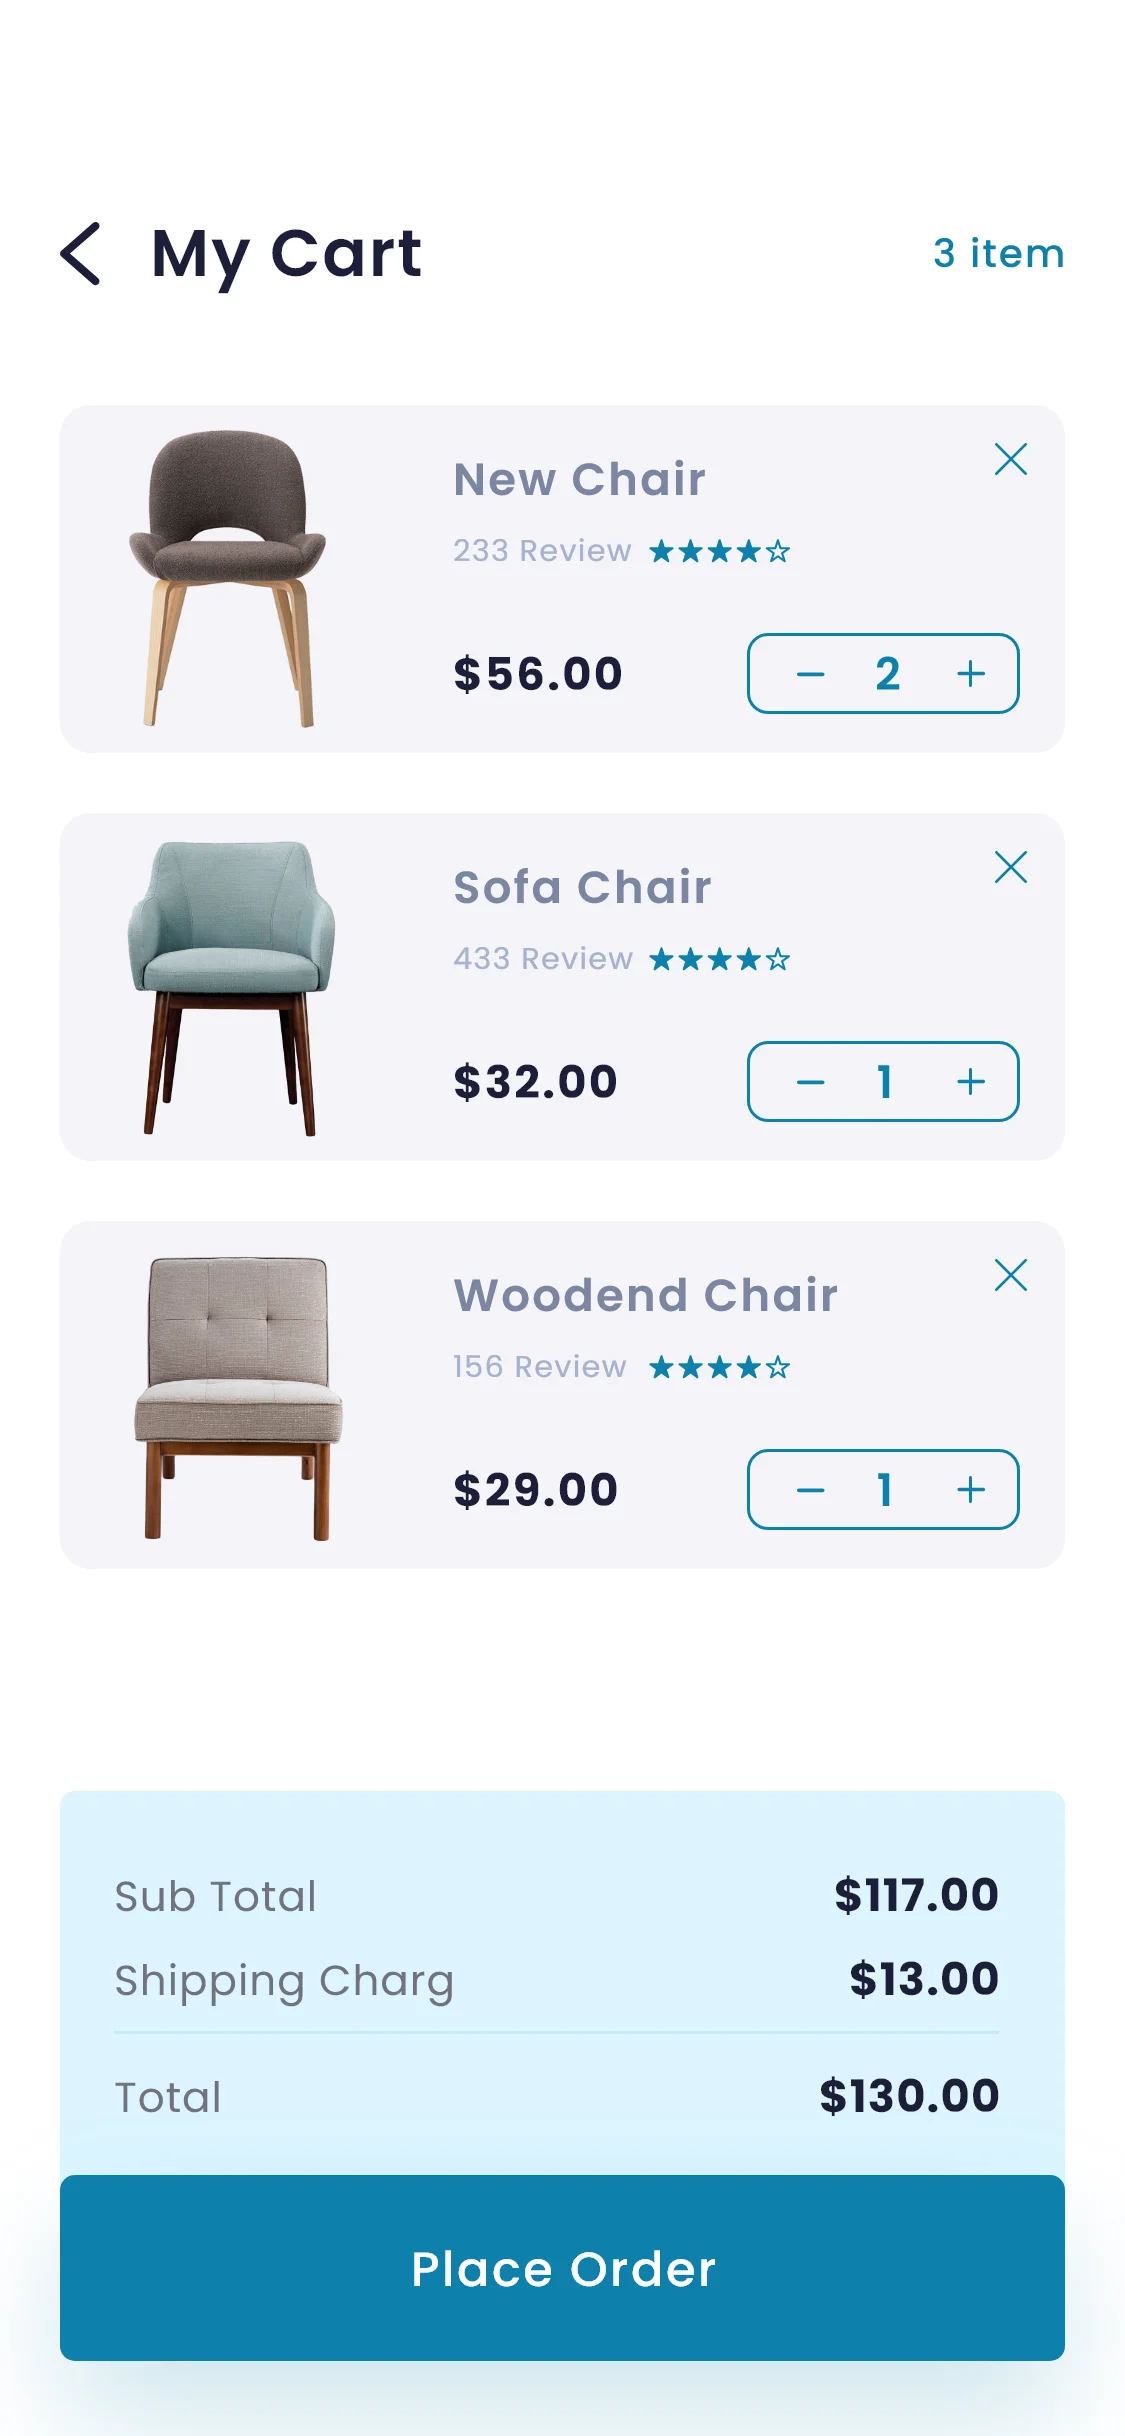 家具应用UI设计模板 furniture e commerce app-ui套件、应用、网购-到位啦UI